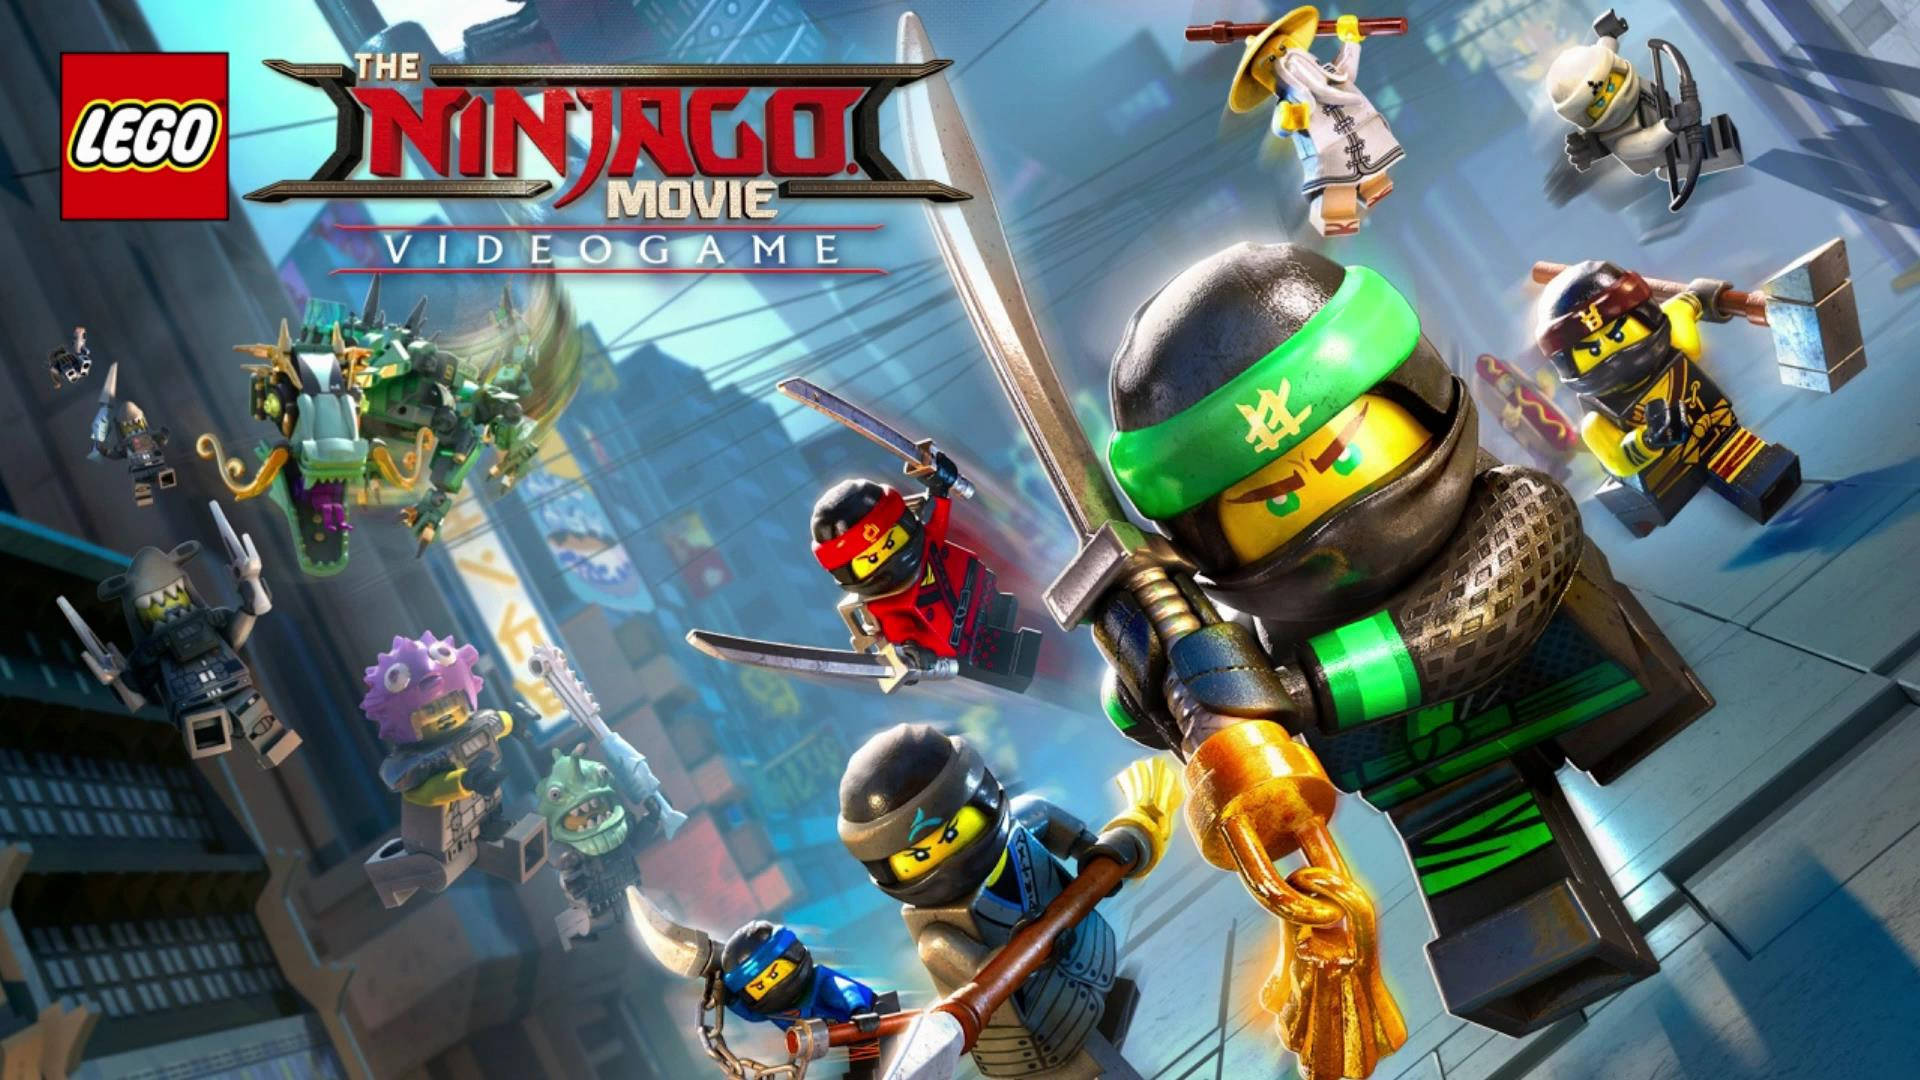 Lego Ninjago Video Game Cover Wallpaper